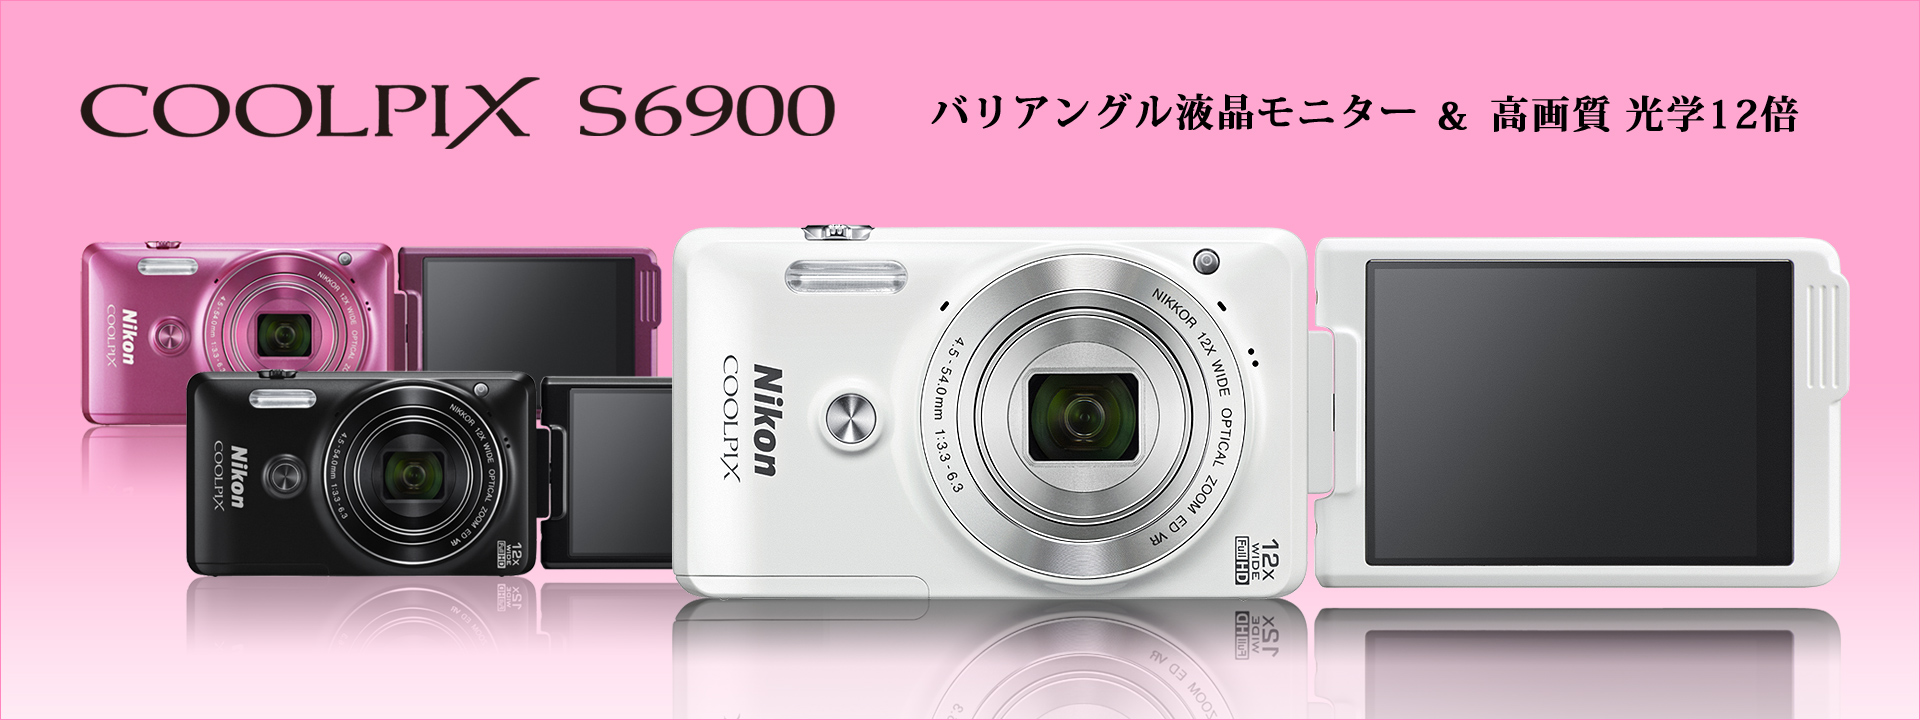 COOLPIX S6900 - 概要 | コンパクトデジタルカメラ | ニコンイメージング